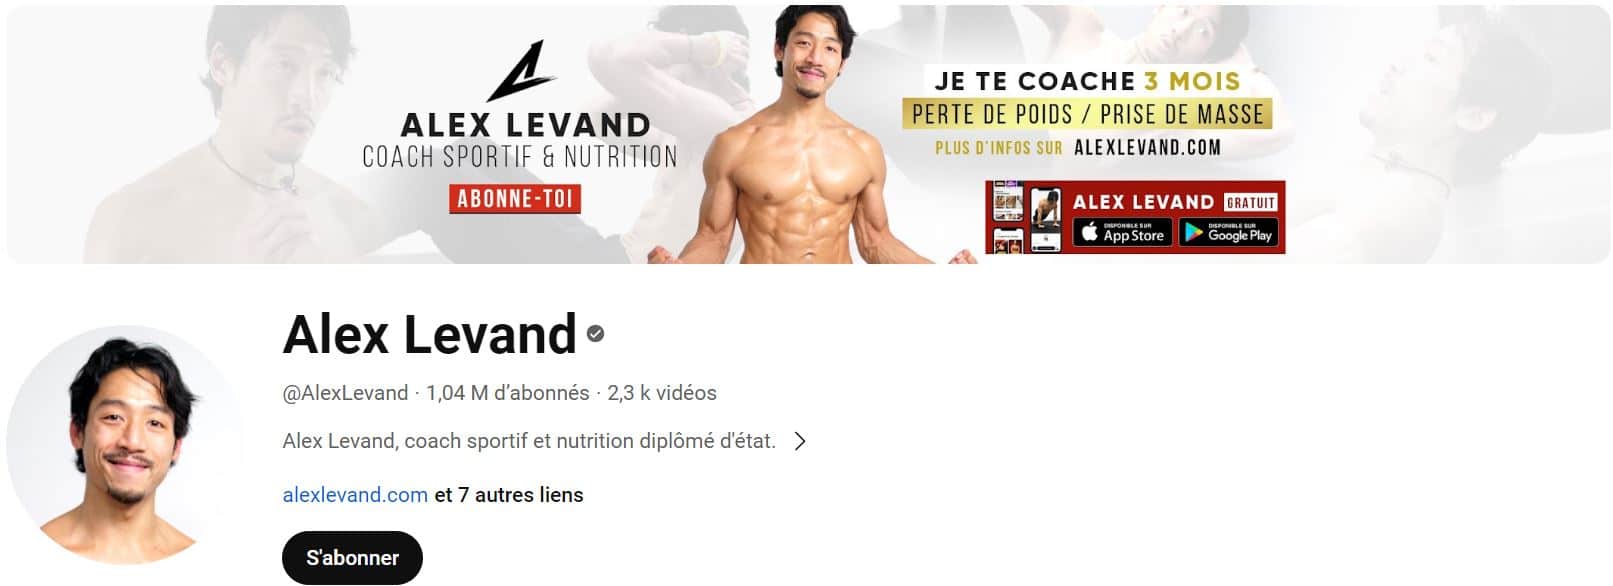 Chaine YouTube pour le sport de Alex Levand